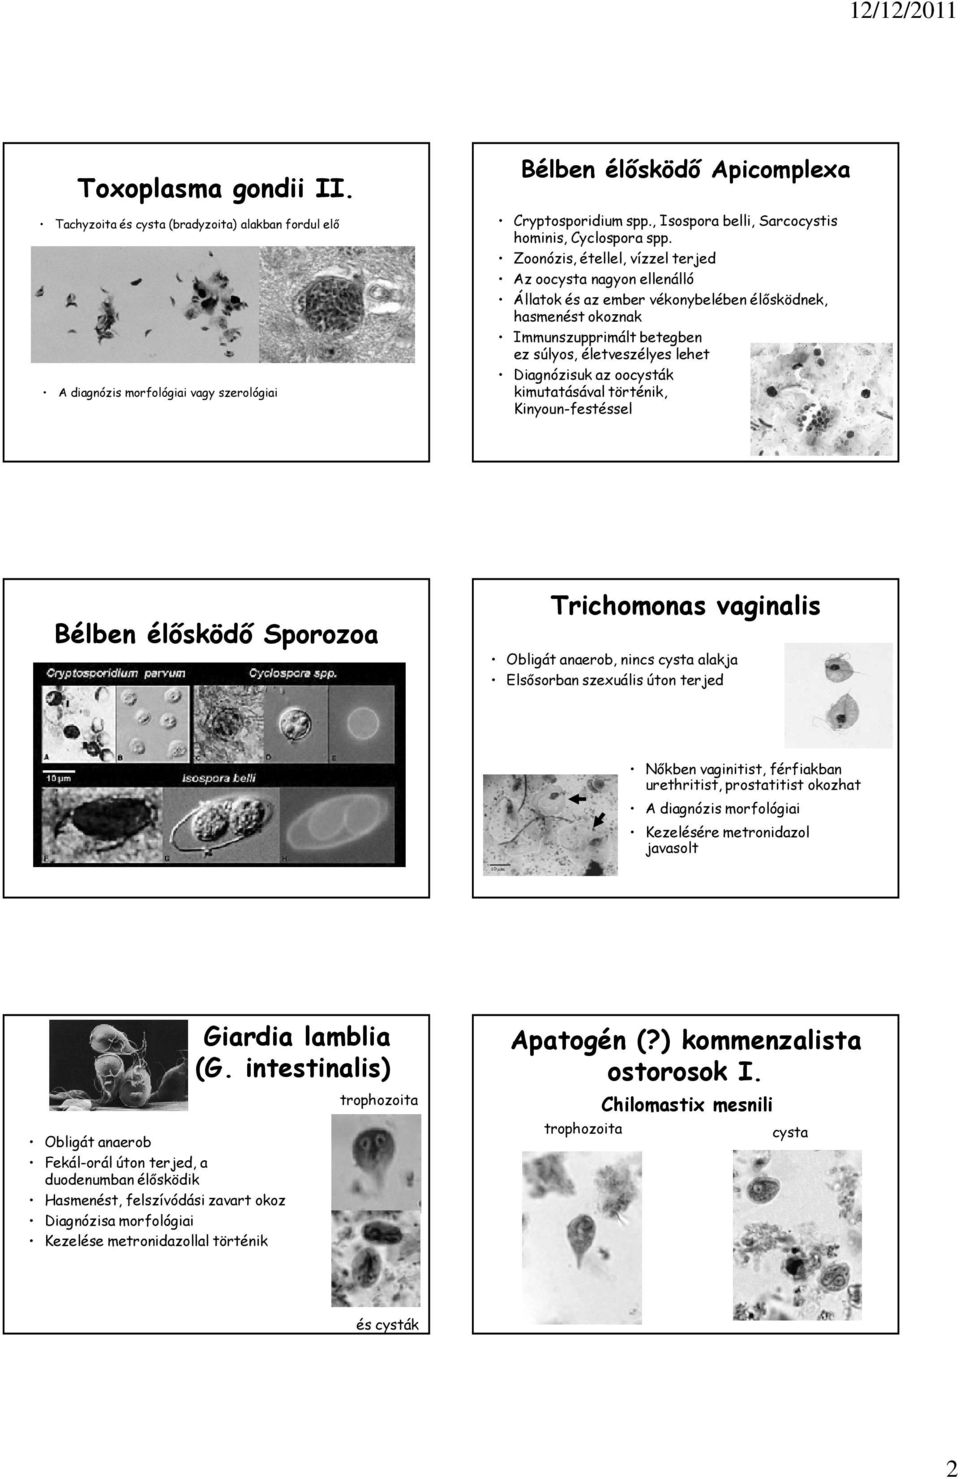 Az orvosi mikrobiológia tankönyve | Digitális Tankönyvtár